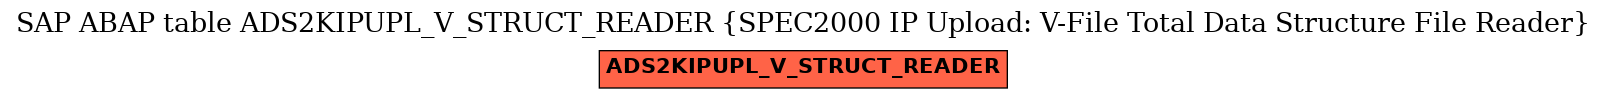 E-R Diagram for table ADS2KIPUPL_V_STRUCT_READER (SPEC2000 IP Upload: V-File Total Data Structure File Reader)